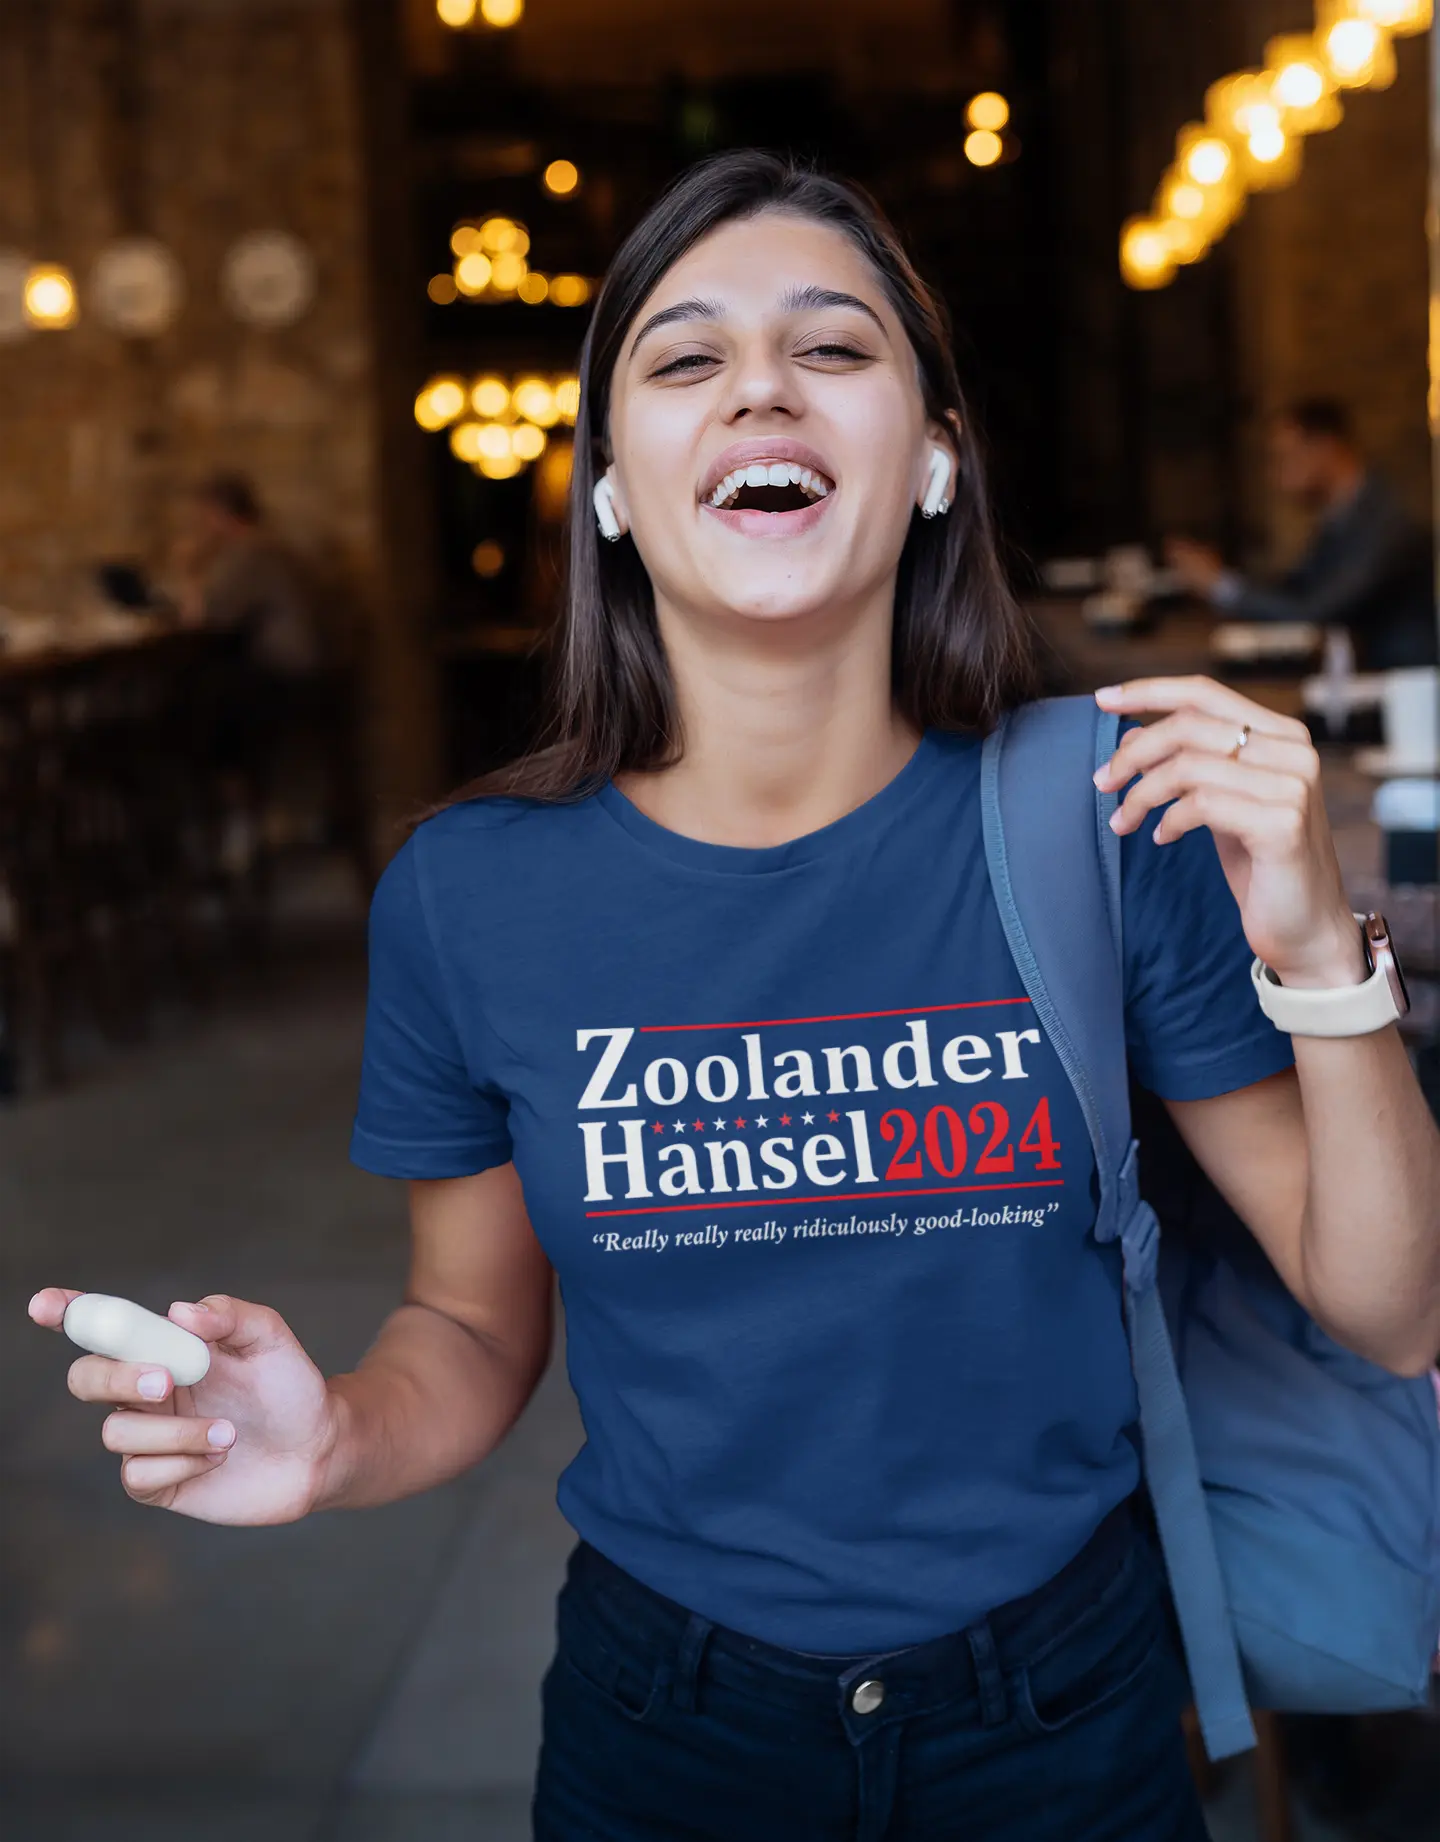 Zoolander Hansel 2024 Election Tshirt - Donkey Tees